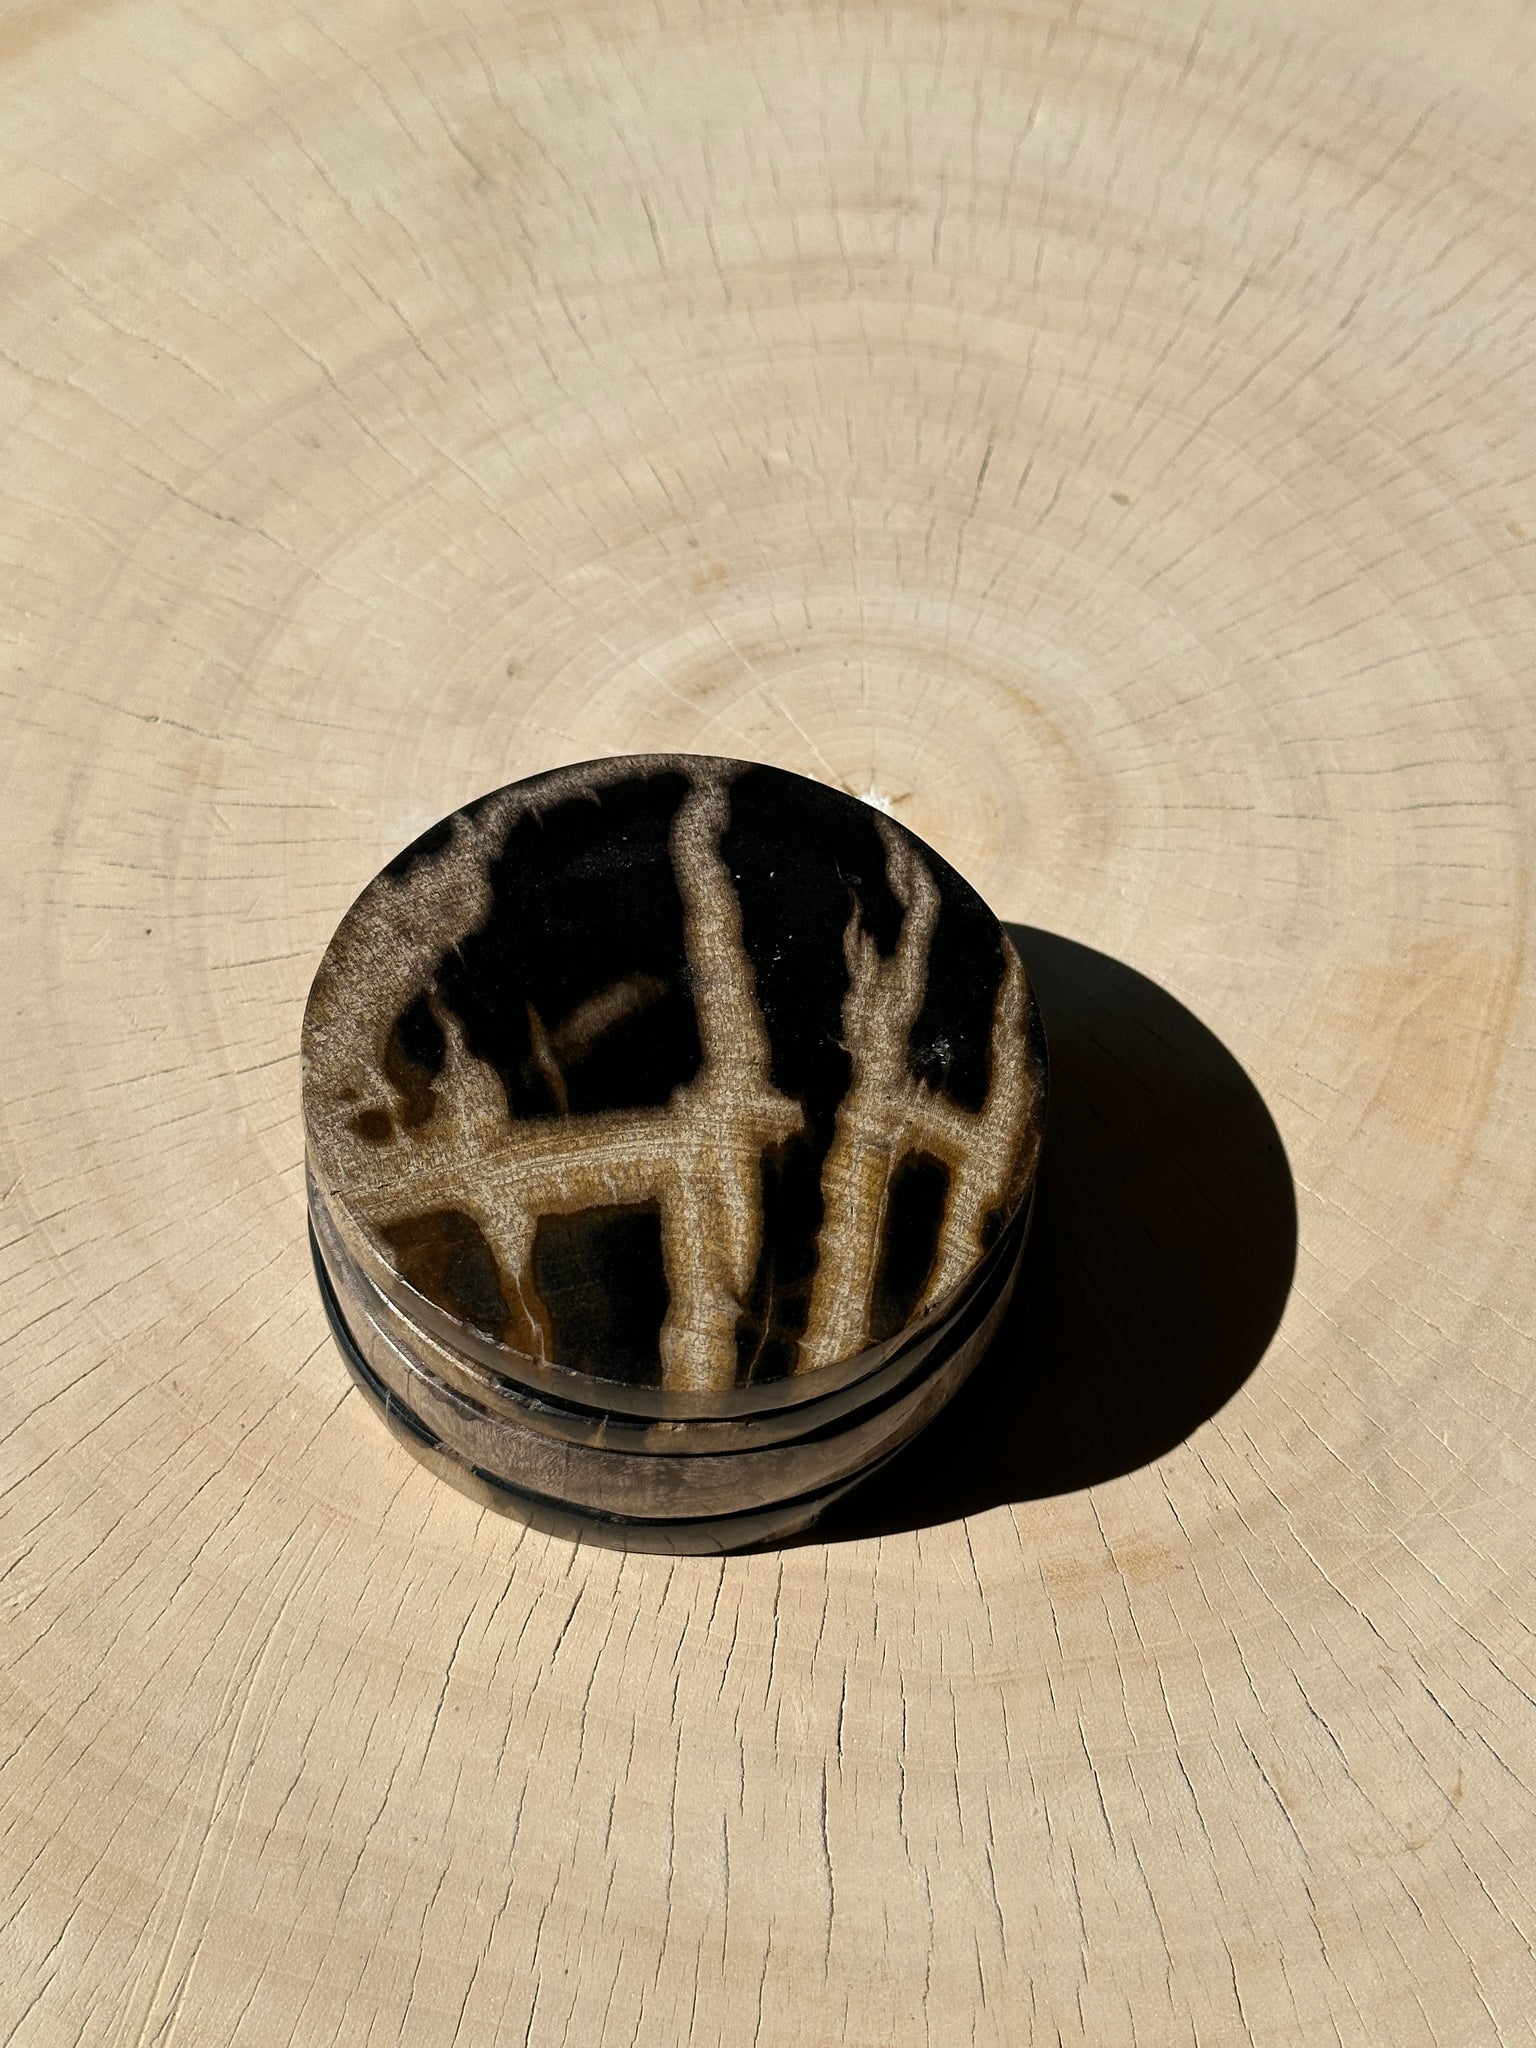 Ensemble de 4 dessous de verre en bois fossilisé (larges, 2 épais, 2 fins)